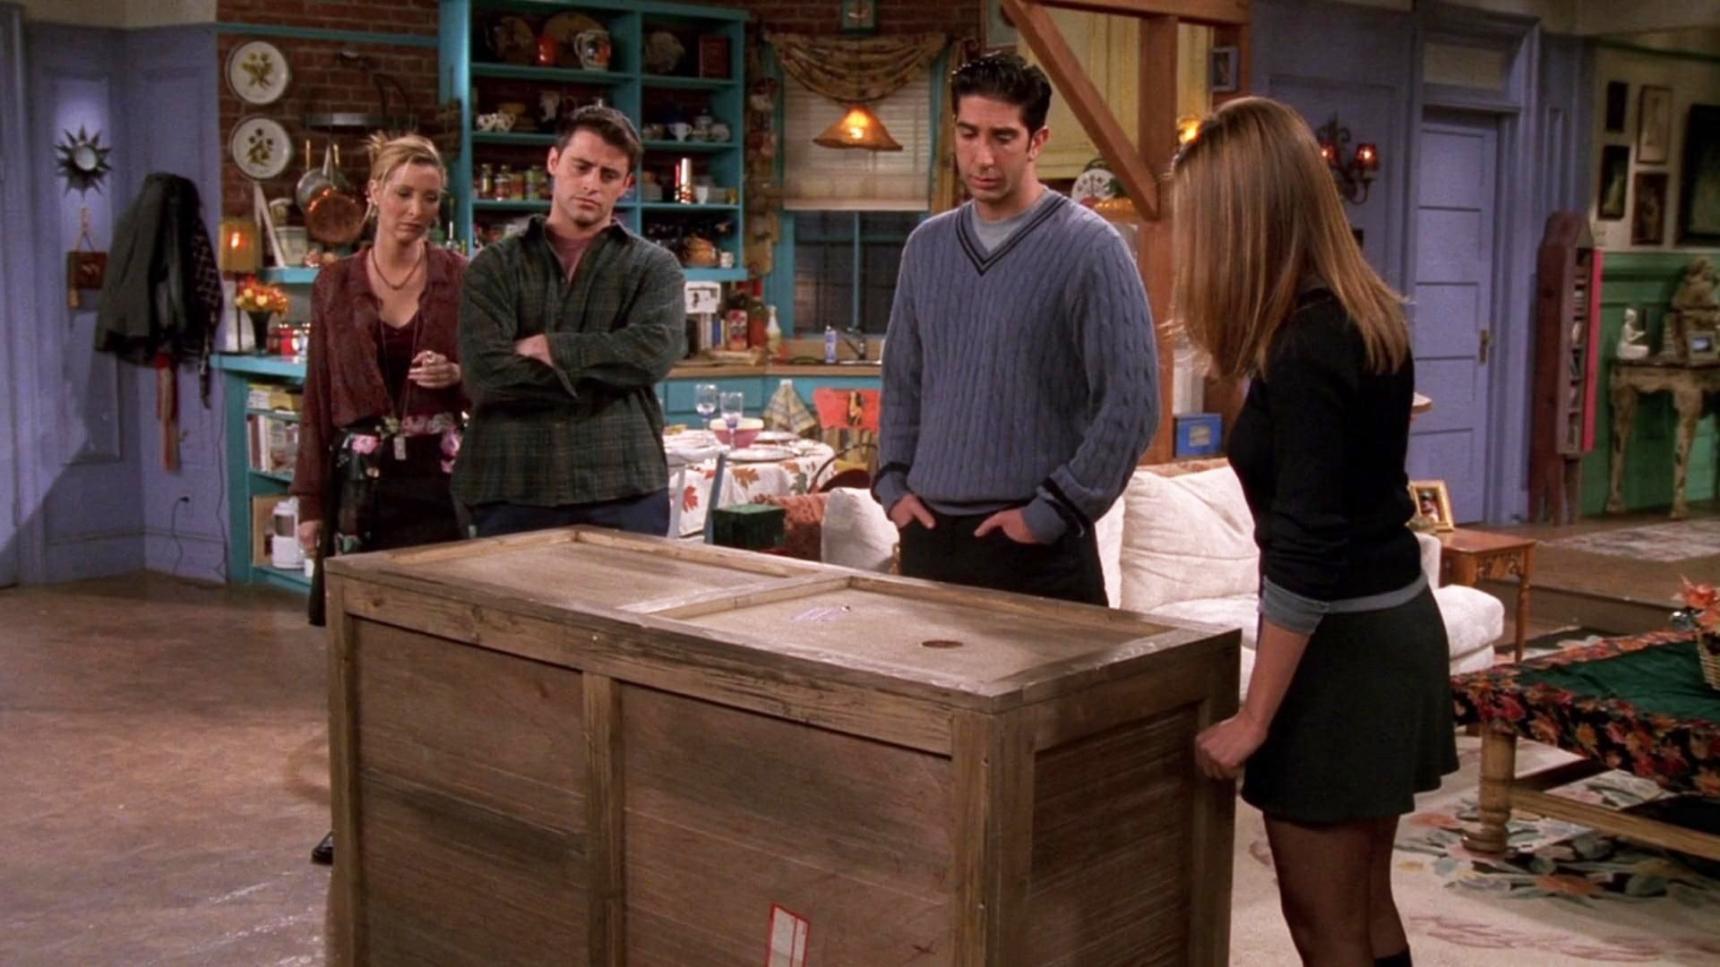 Poster del episodio 8 de Friends online